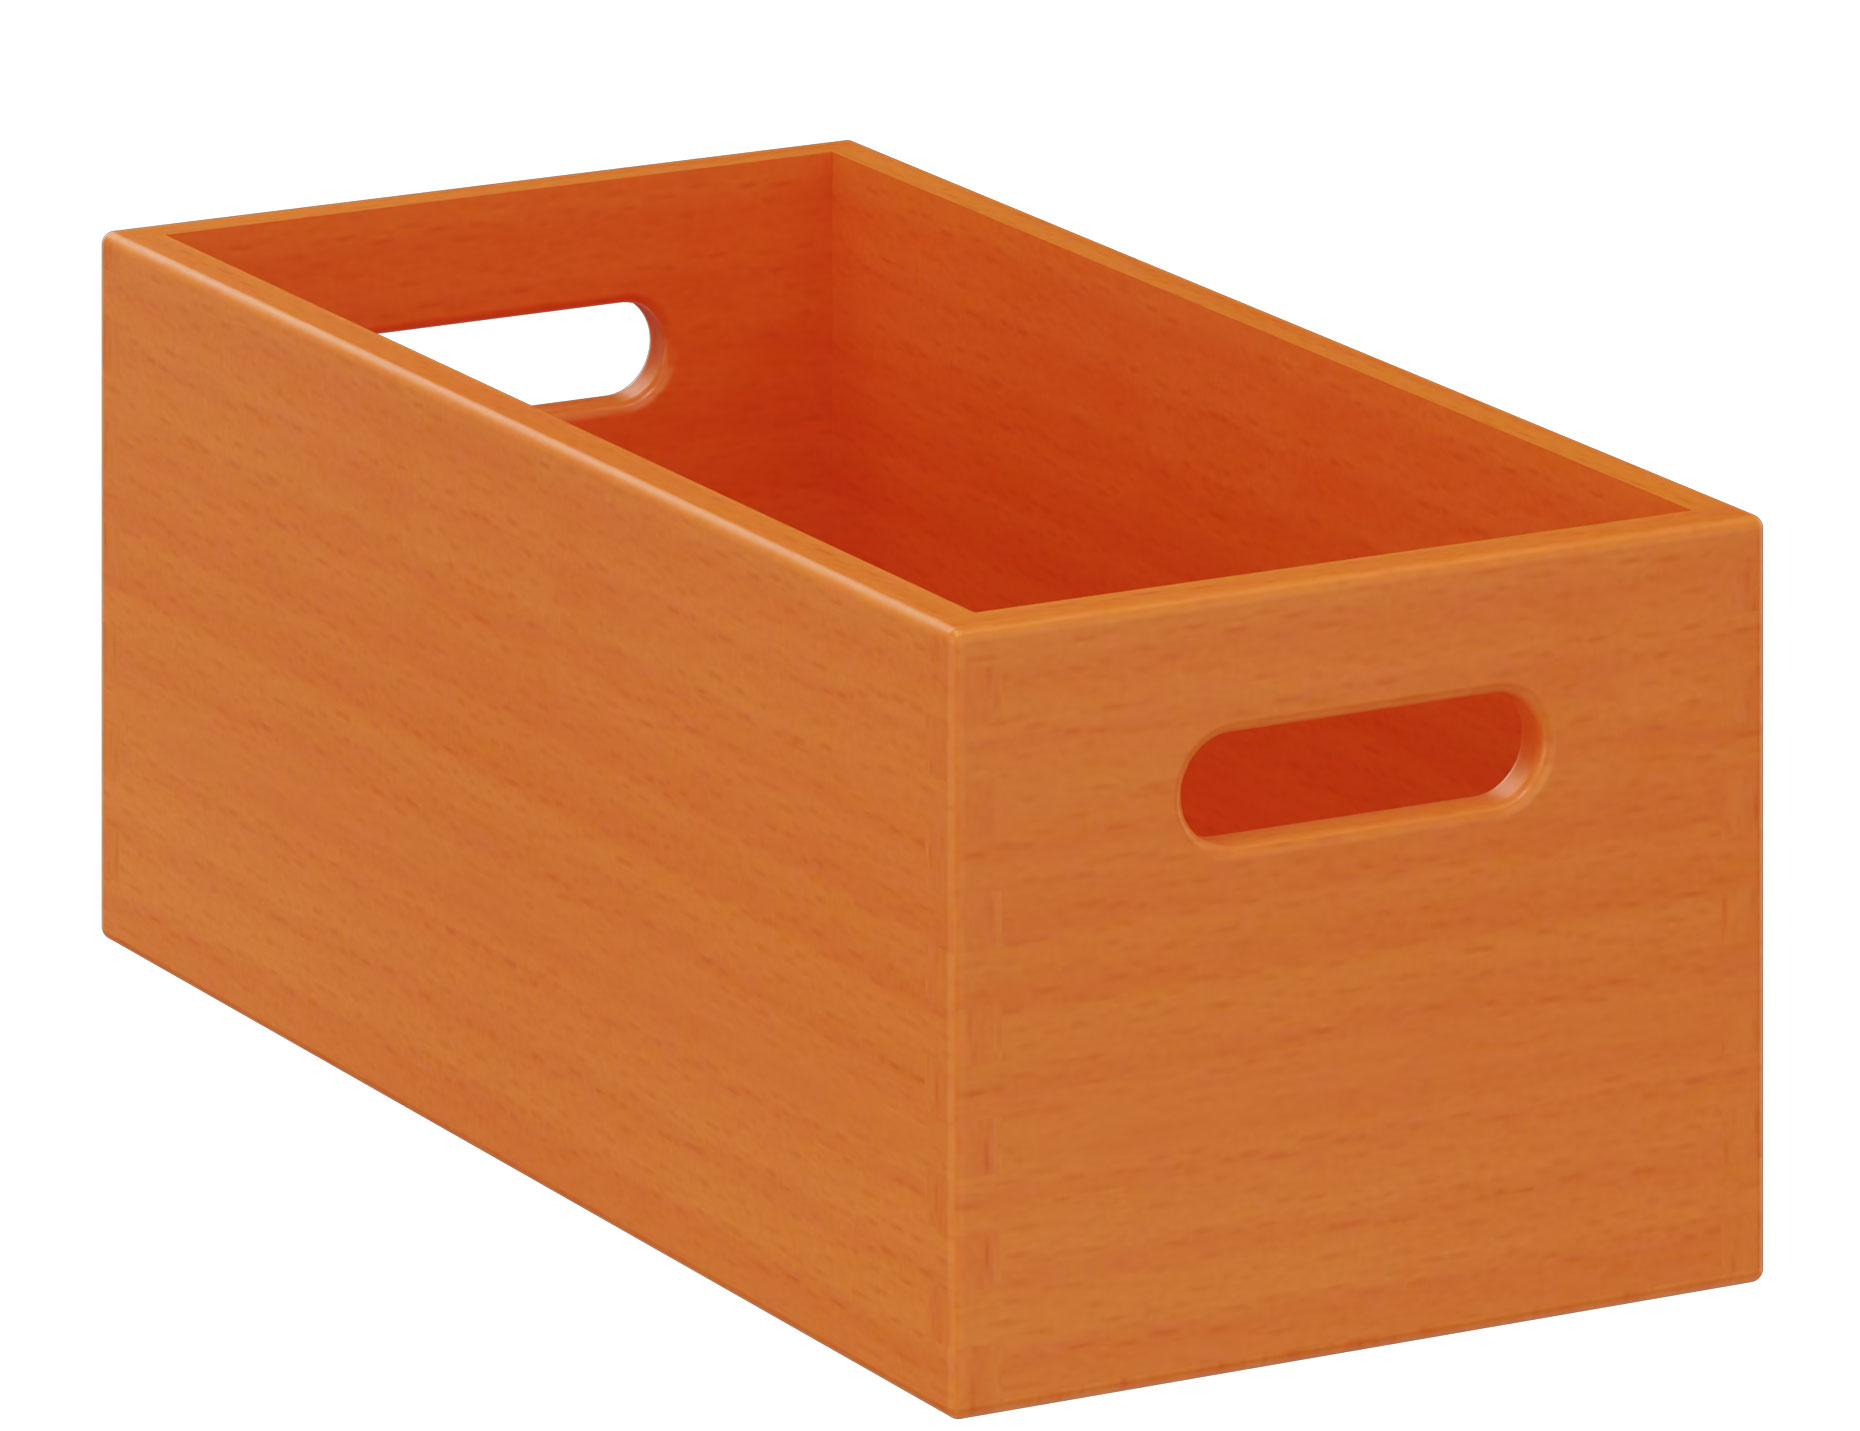 Materialkasten schmal, Höhe 14 cm, orange